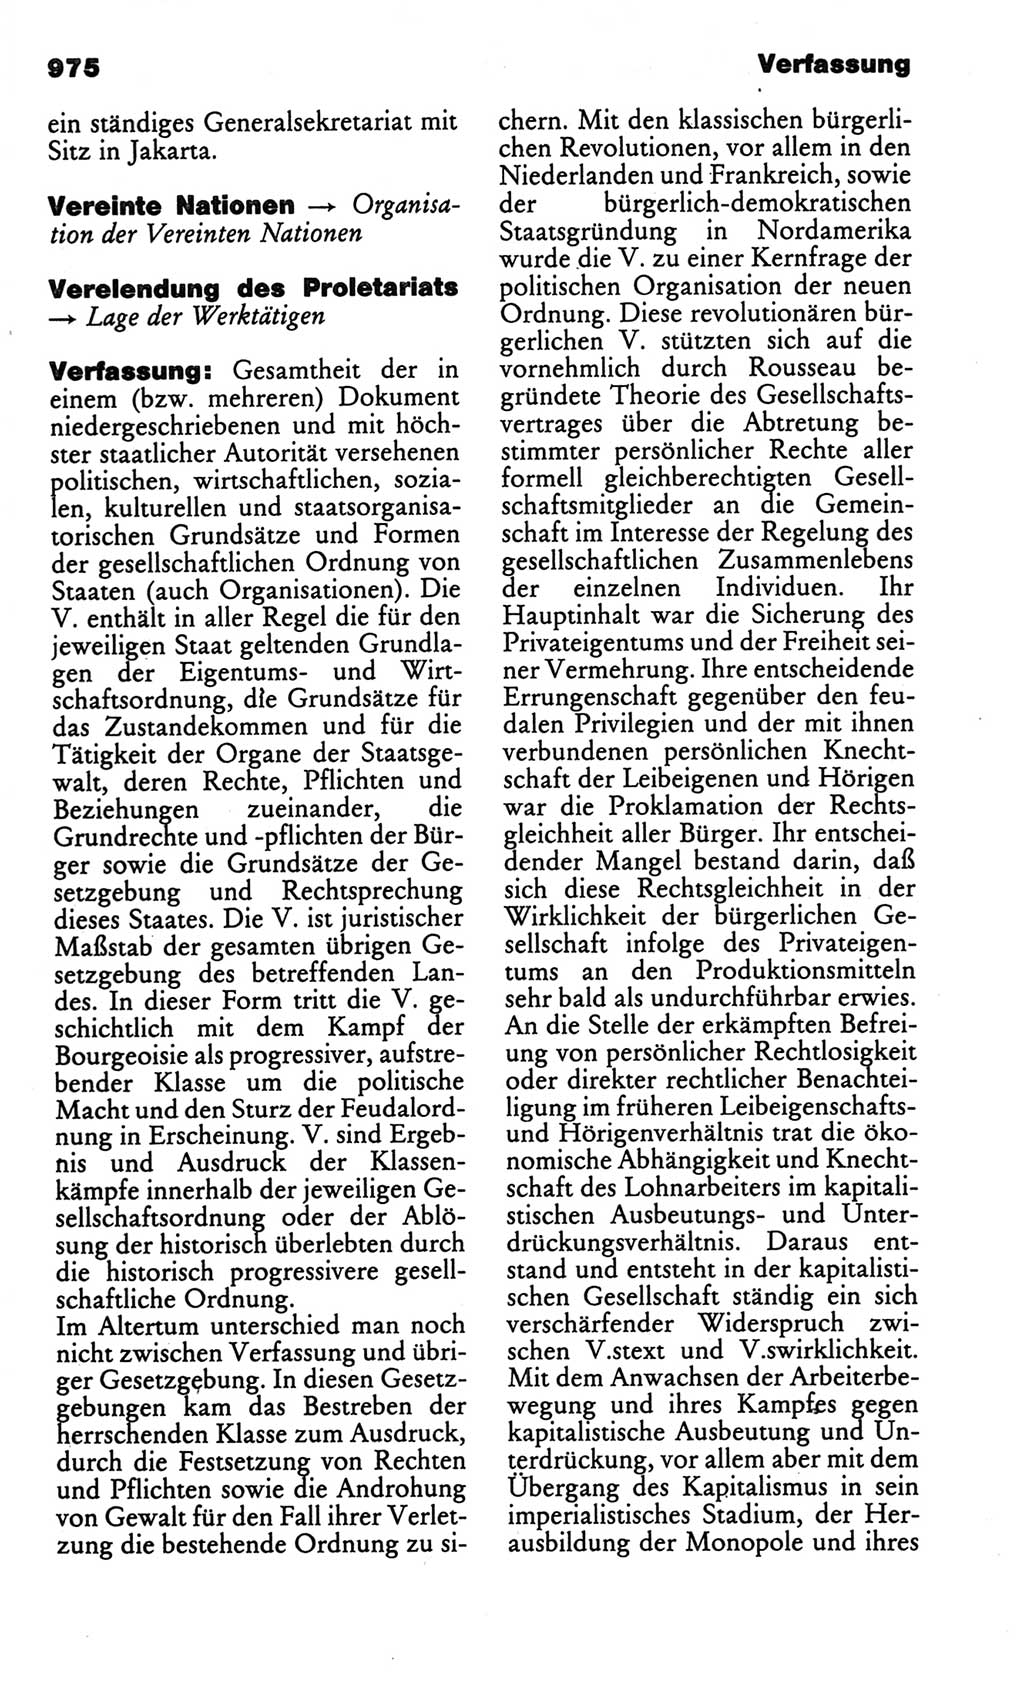 Kleines politisches Wörterbuch [Deutsche Demokratische Republik (DDR)] 1986, Seite 975 (Kl. pol. Wb. DDR 1986, S. 975)